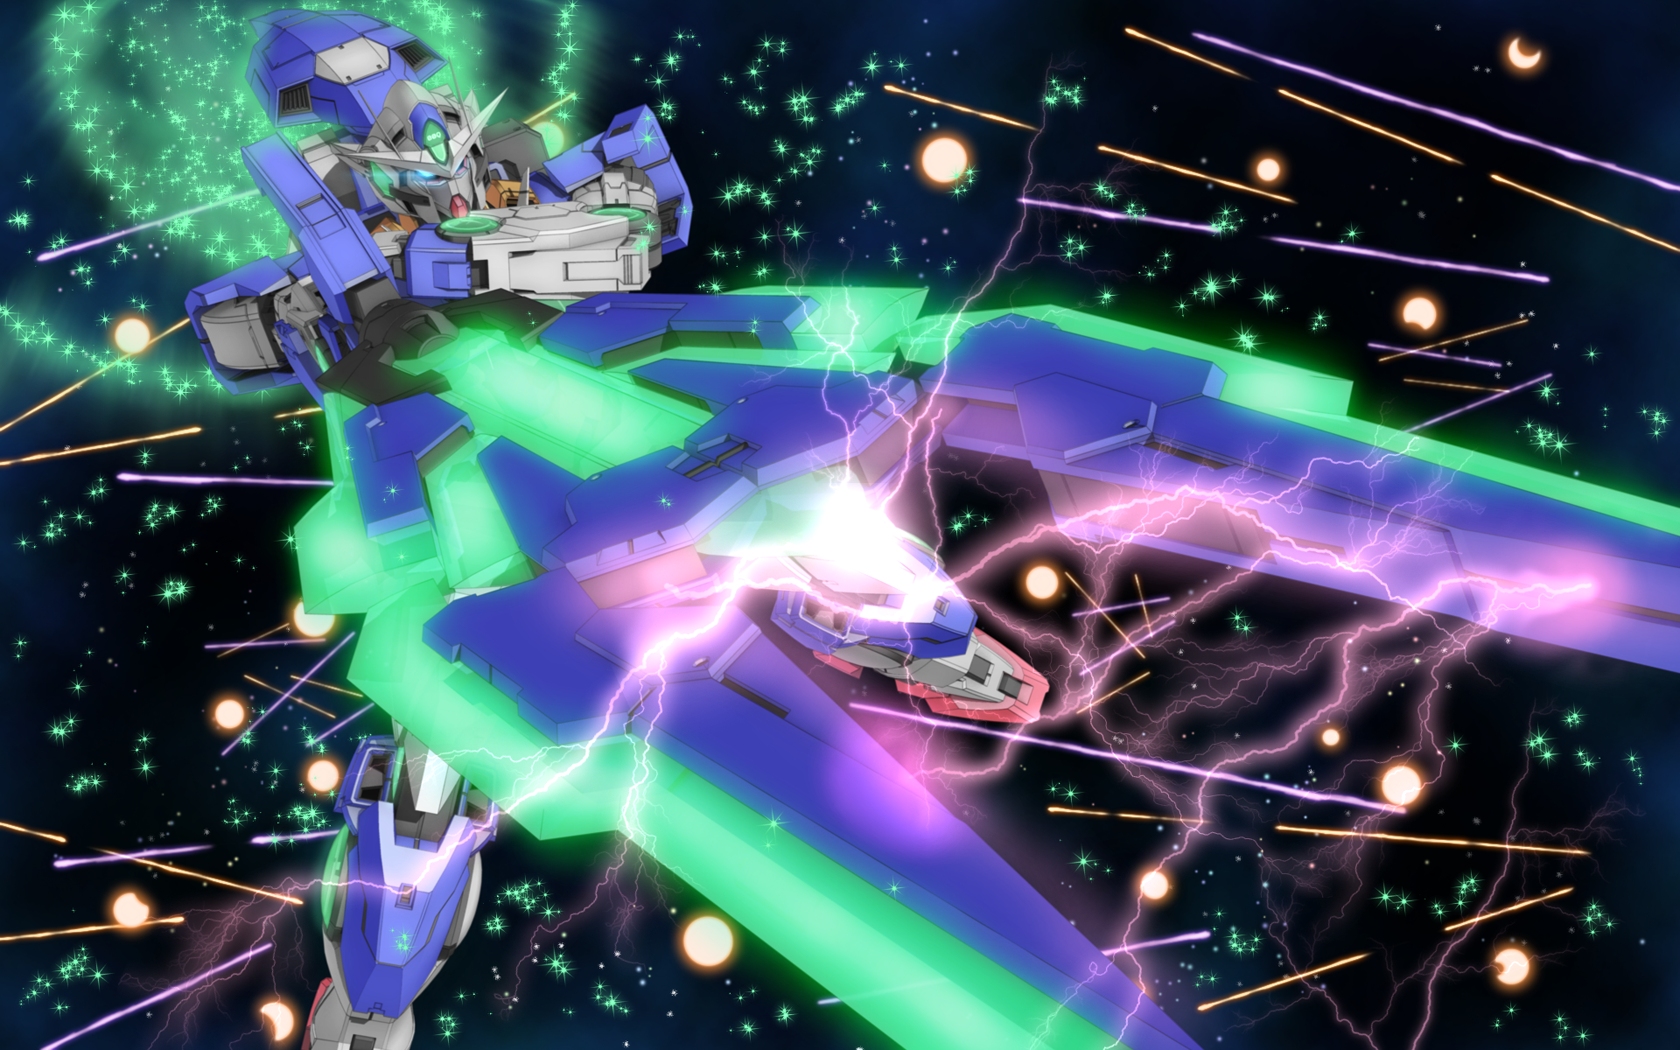 Anime Mech Gundam Super Robot Wars Mobile Suit Gundam 00 00 Raiser Artwork Digital Art Fan Art 1680x1050